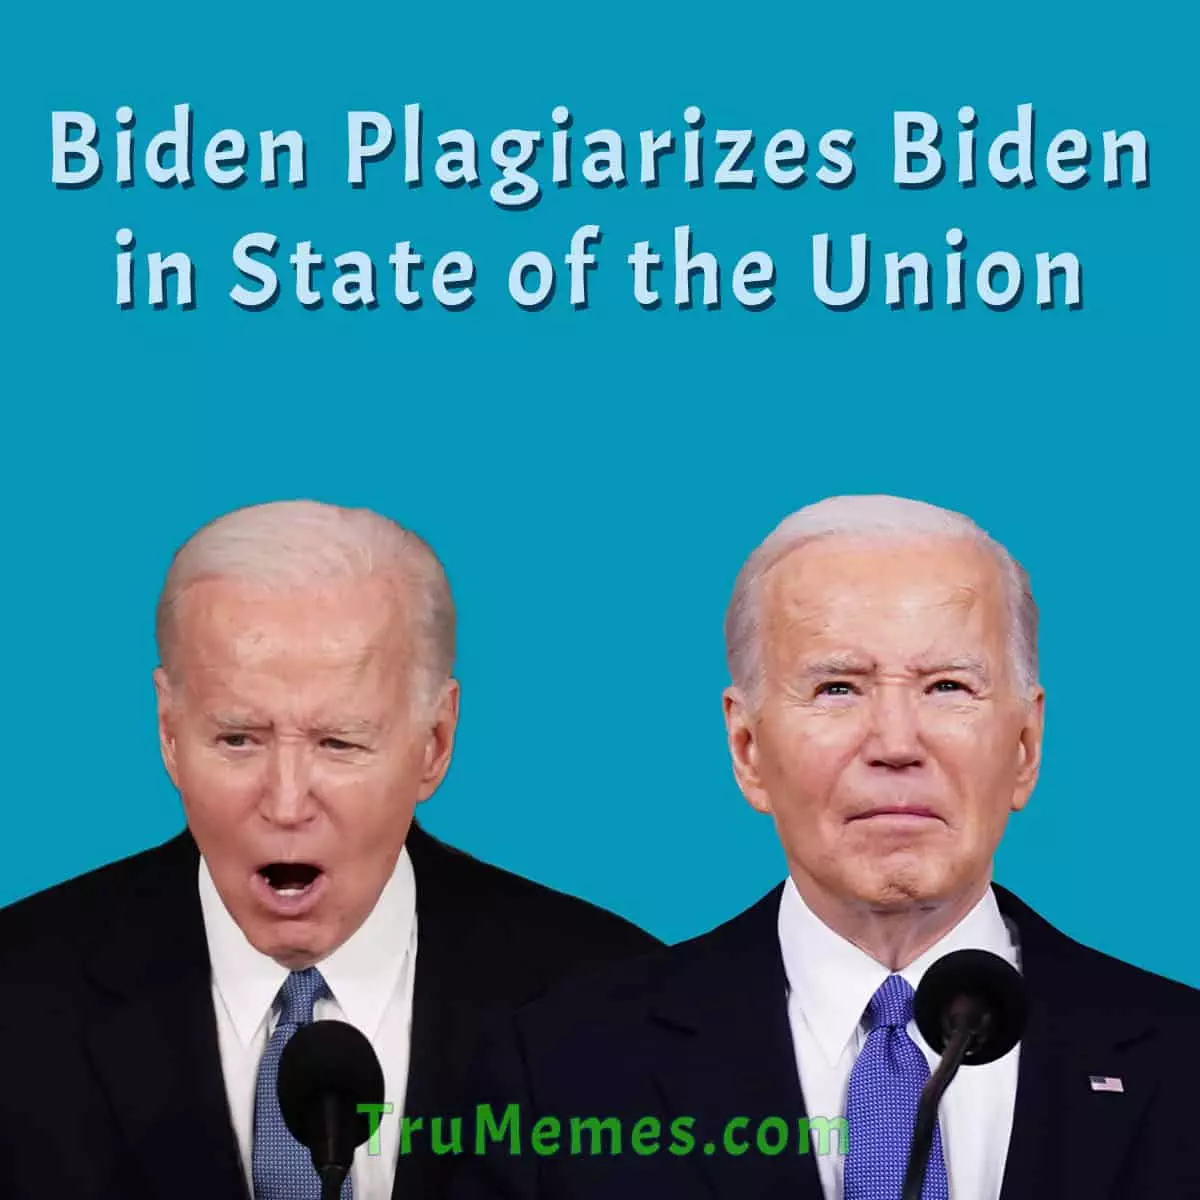 Biden Plagiarizes Biden in State of the Union Address